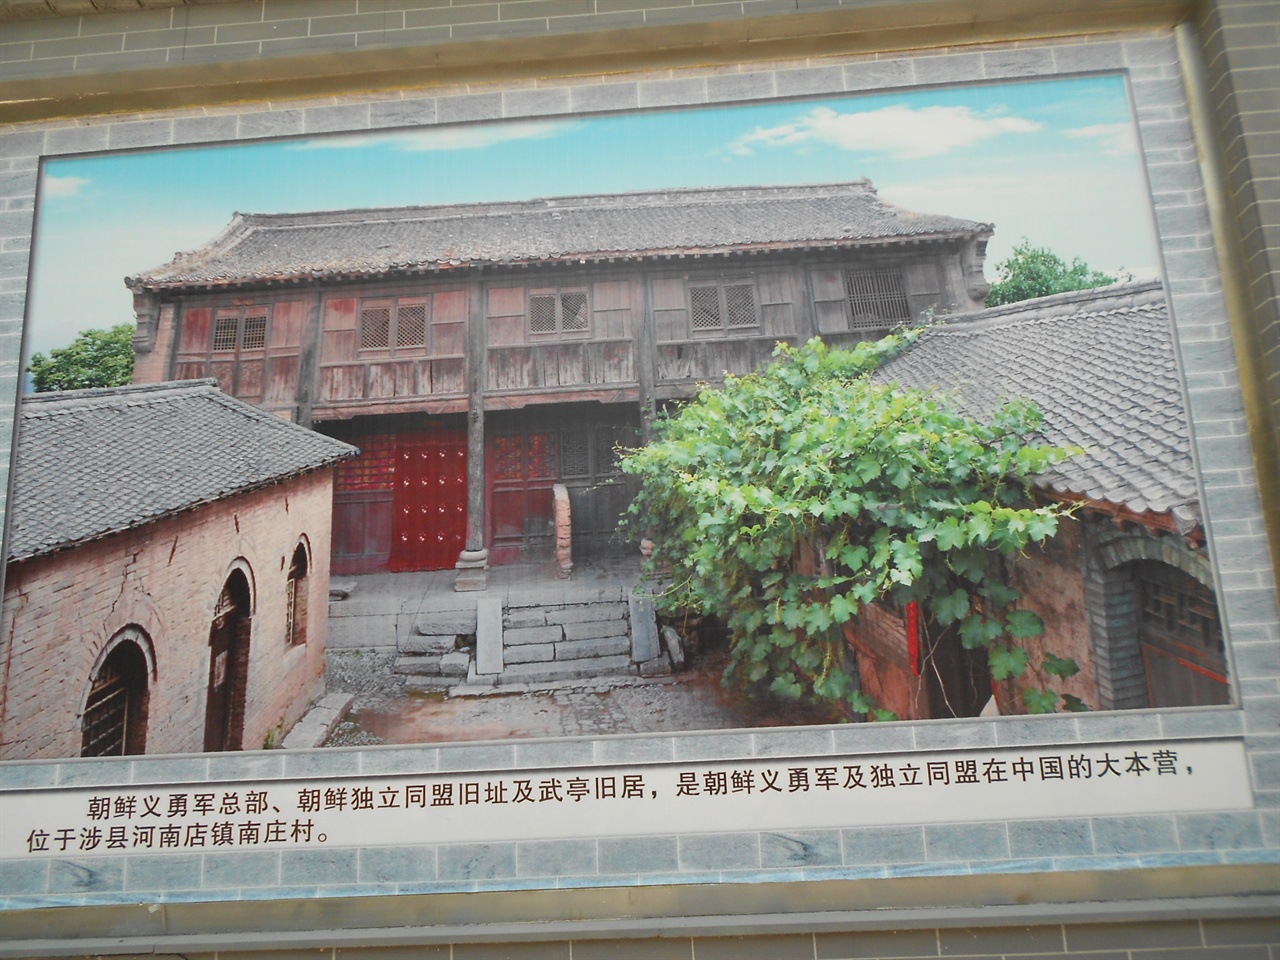 팔로군129 사령부안에는 조선의용군이 쓰던 건물의 대형 사진을  벽면에 붙여놓았다. 항일의 여러 유적지들을 사진으로 남겨서 기리고 있었다.